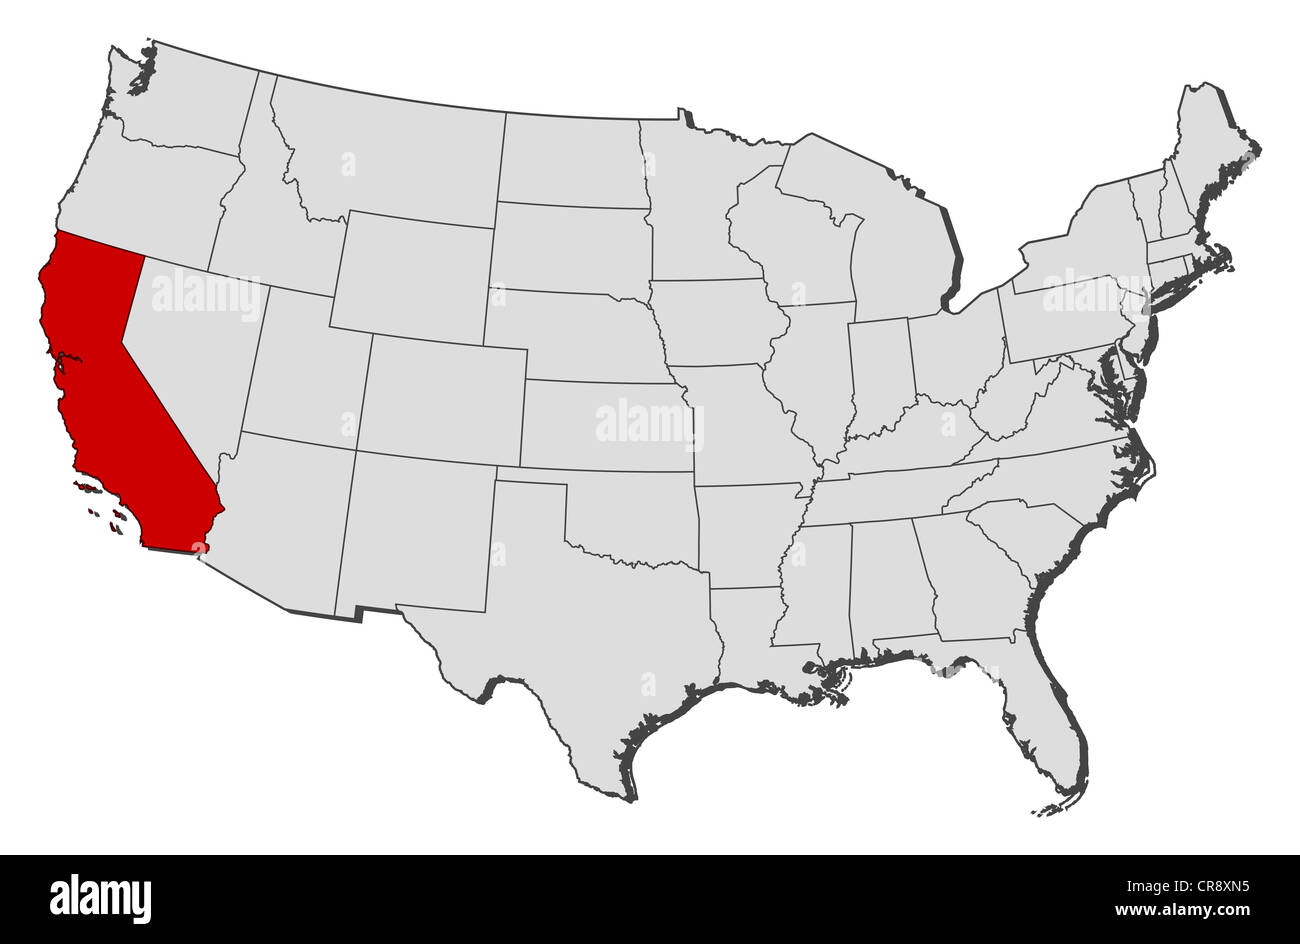 Mapa Político De Estados Unidos Con Los Diversos Estados En Que